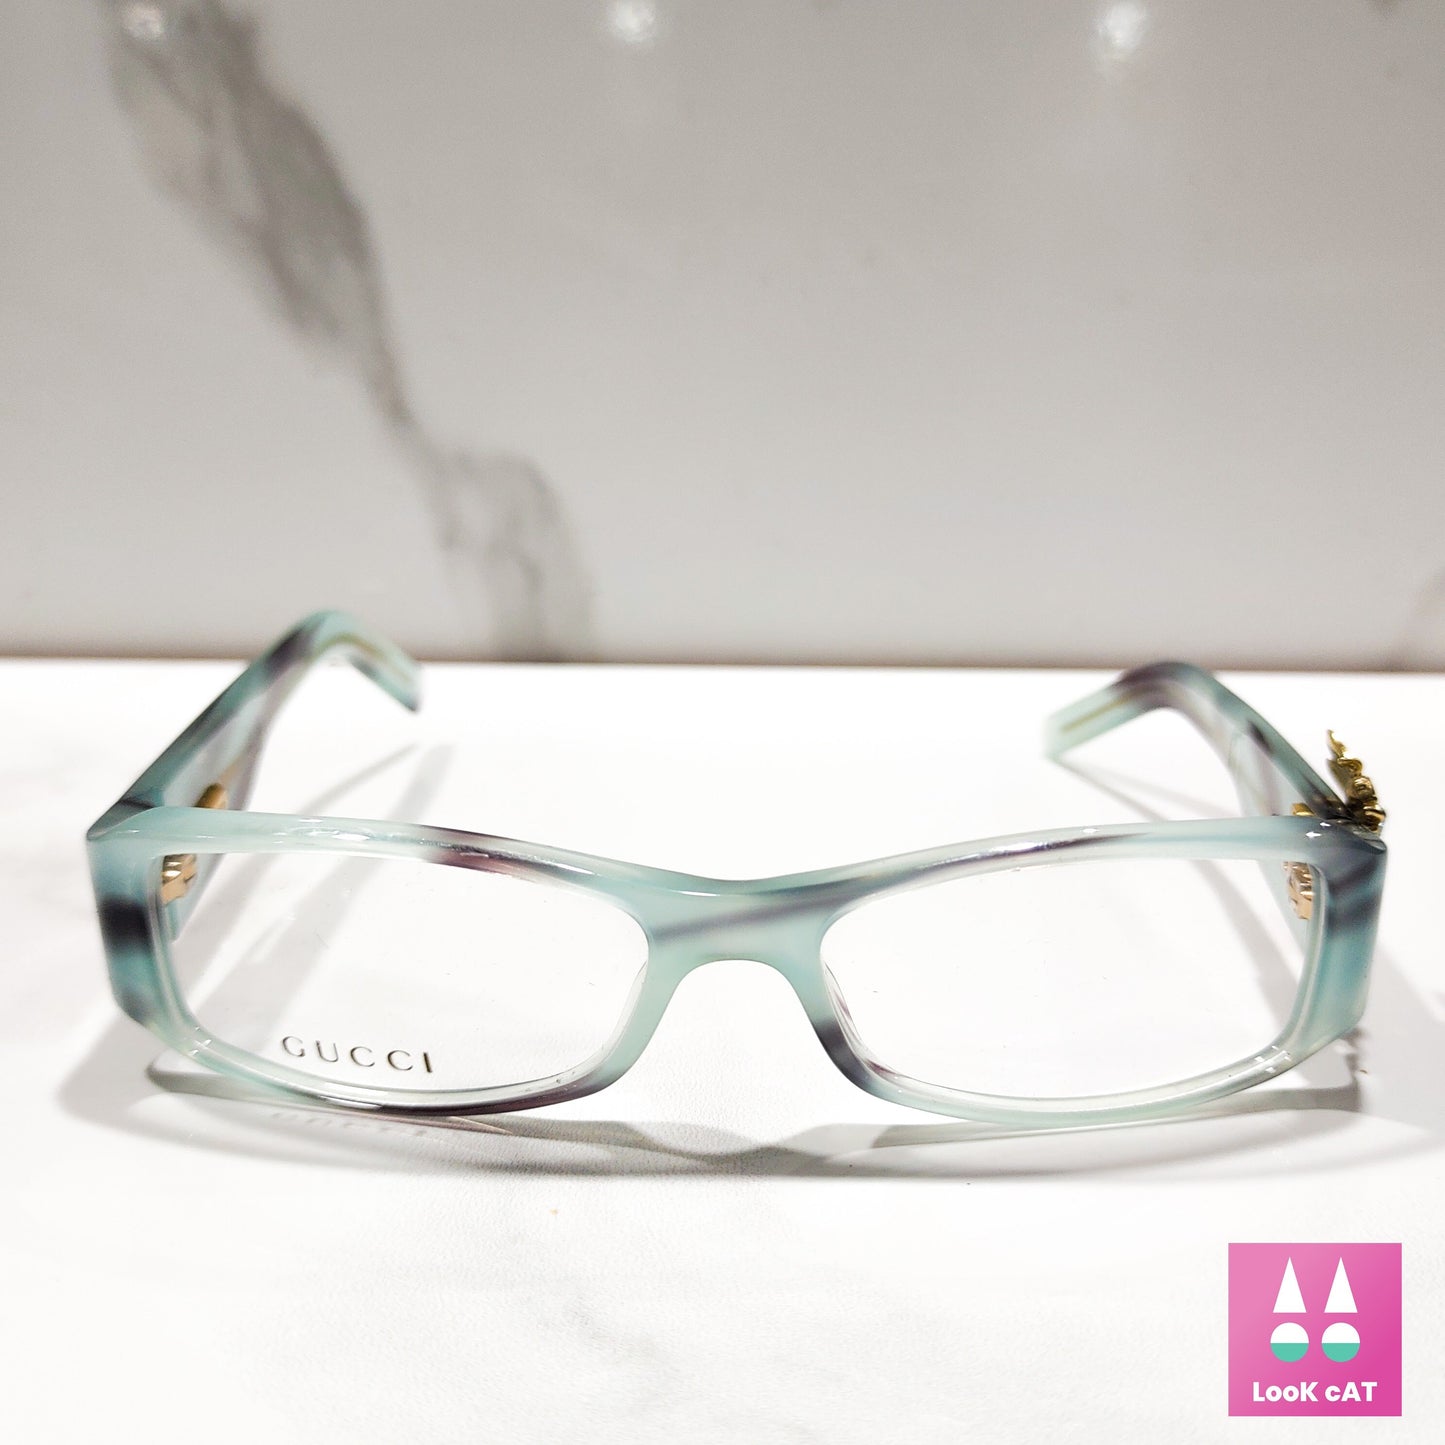 Gucci eyeglasses vintage eyeglasses eyewear lunette brille y2k